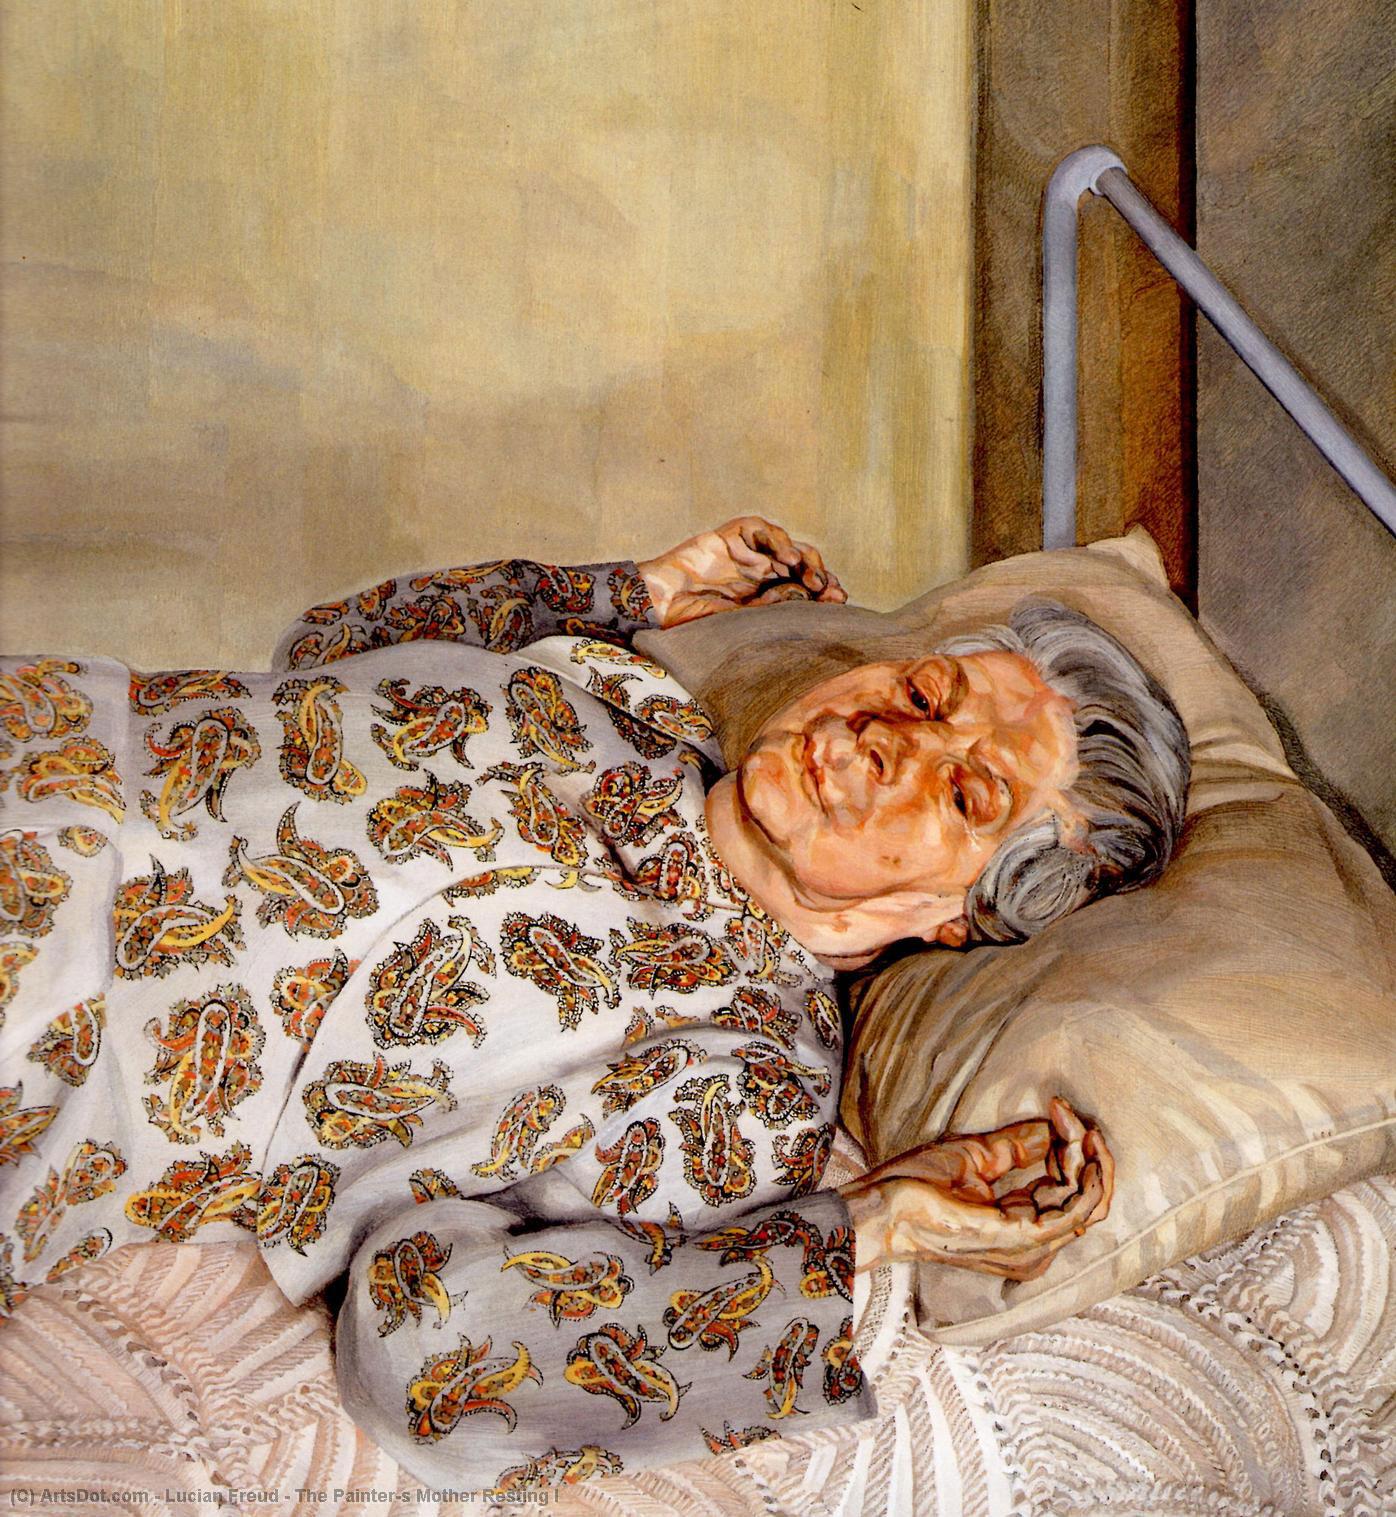 WikiOO.org - Enciclopédia das Belas Artes - Pintura, Arte por Lucian Freud - The Painter's Mother Resting I